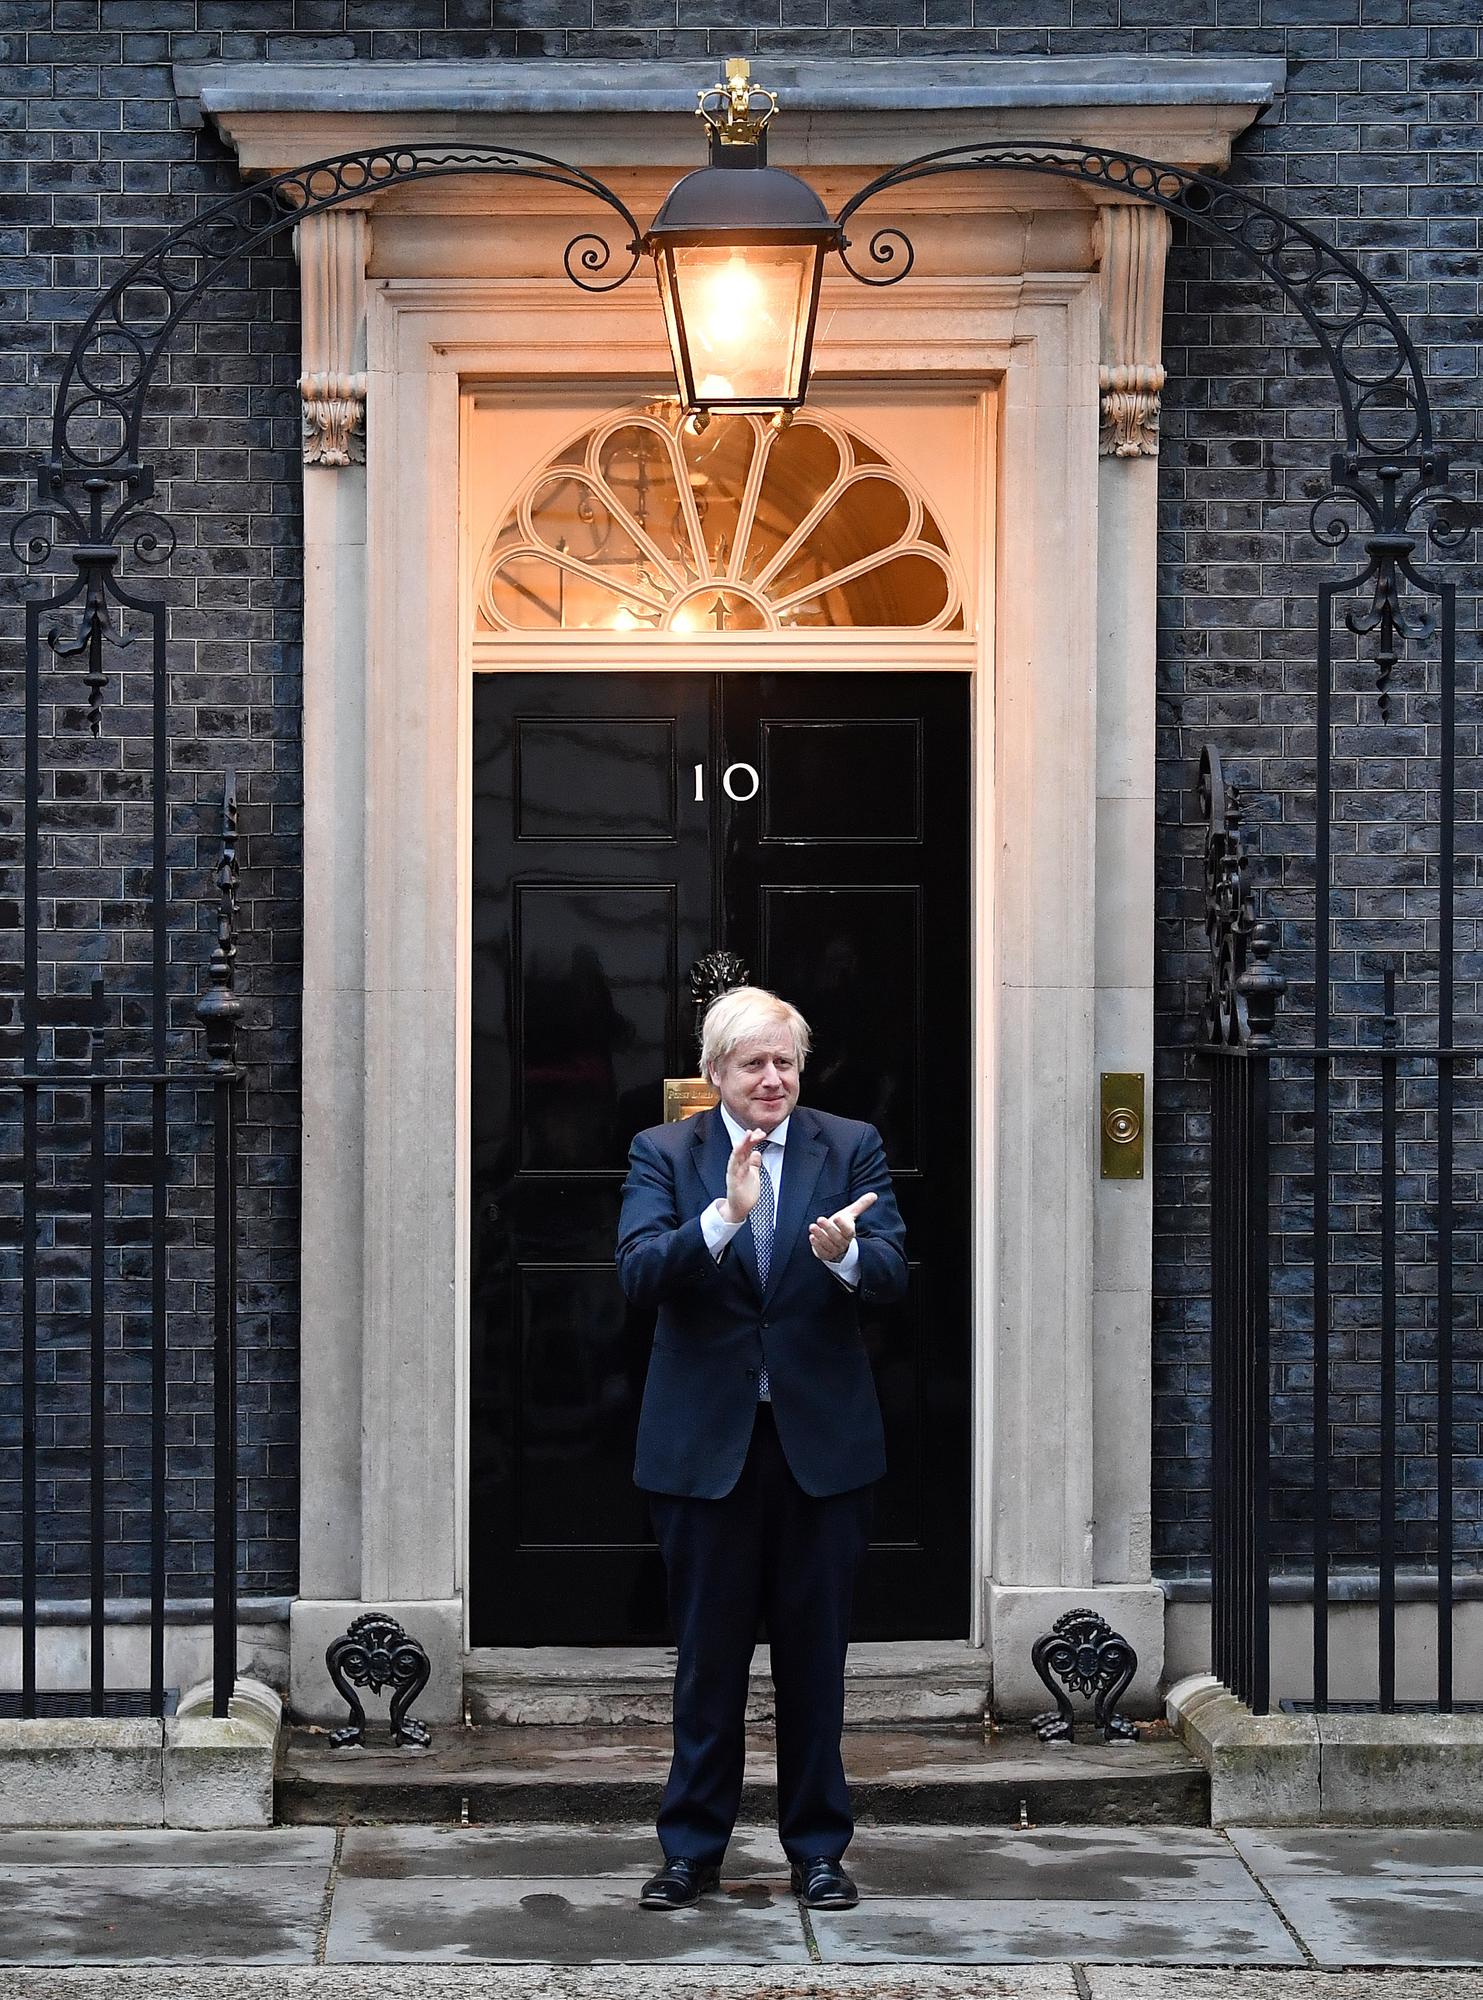 Le Premier ministre britannique Boris Johnson a participé à la journée nationale "Clap for Carers" ayant pour but de remercier le NHS, le service public de santé, pour son travail. 10 Downing Street, Londres, le 30 avril 2020. [AFP - Ben Stansall]